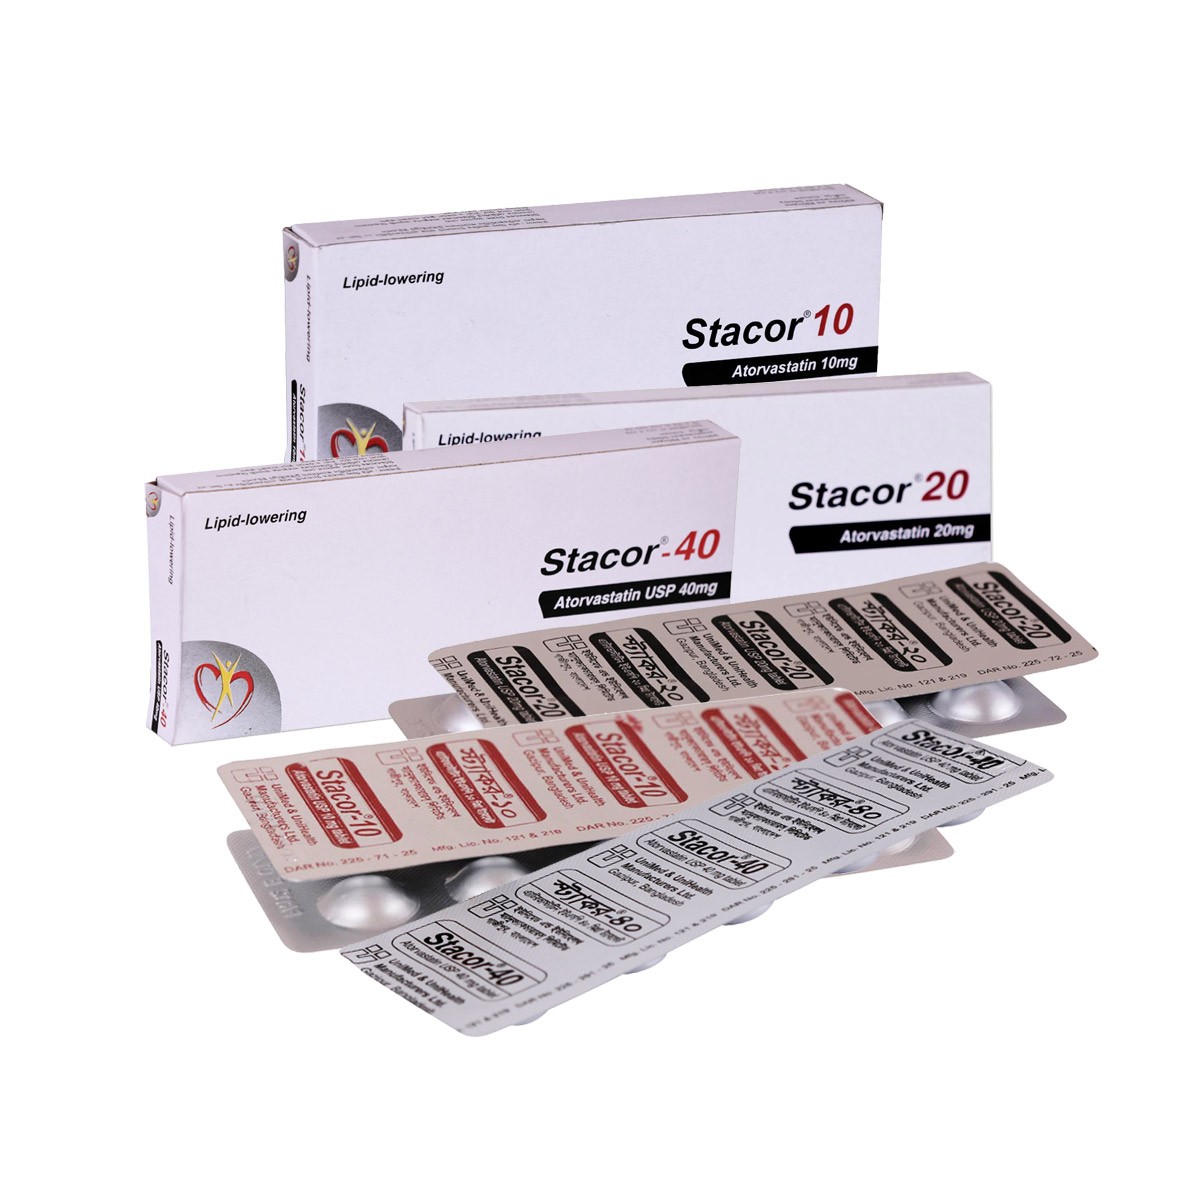 Stacor(20 mg)